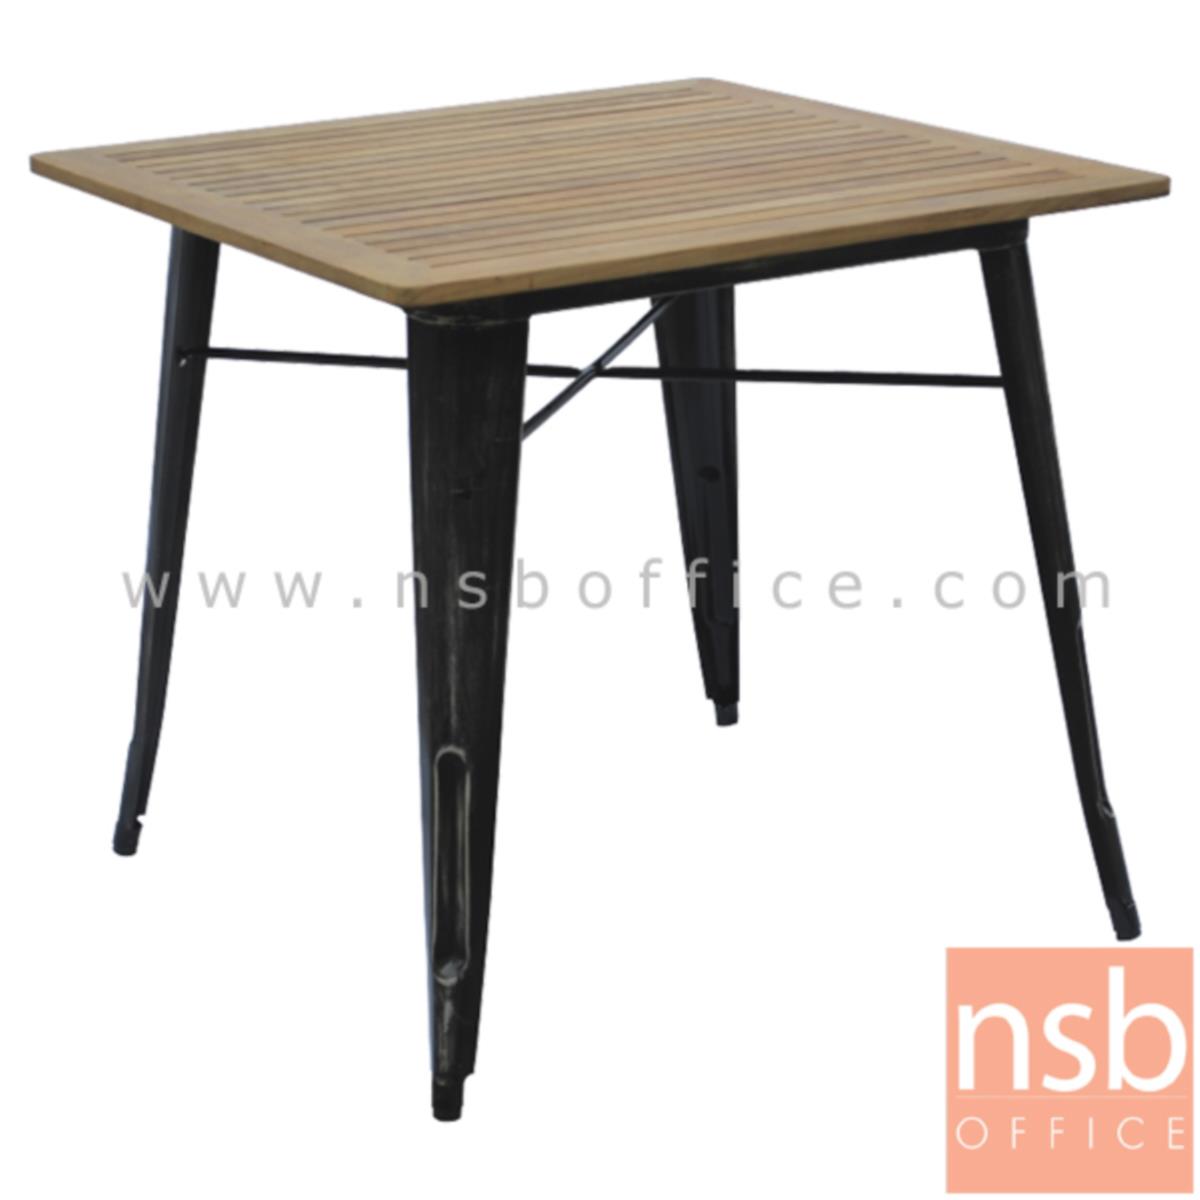 A14A038:โต๊ะไม้โมเดิร์น รุ่น PP94091  ขนาด 80W cm.  ขาเหล็กชุบโครเมี่ยม